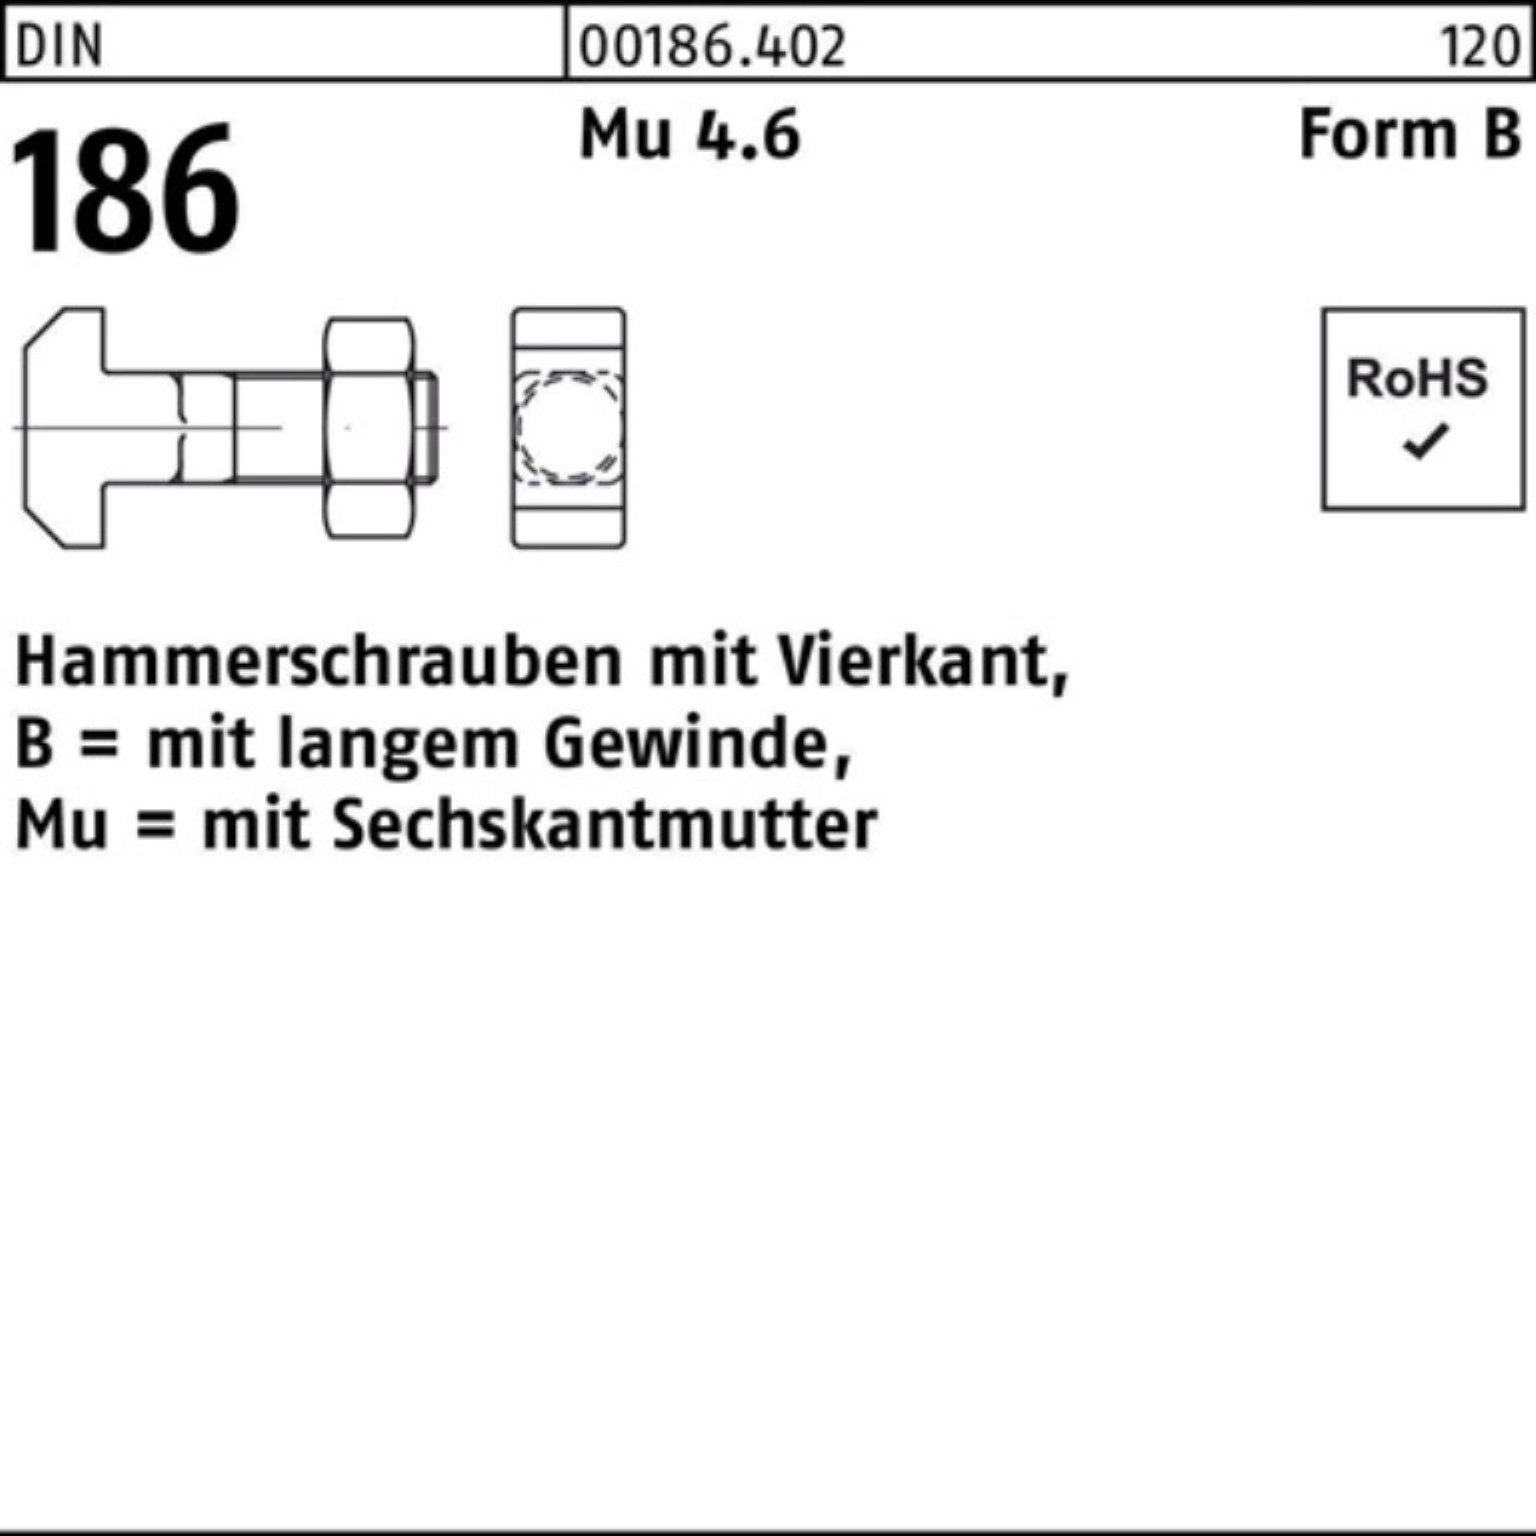 Reyher Schraube Hammerschraube DIN 100er FormB 90 6-ktmutter 186 20x Pack BM Vierkant